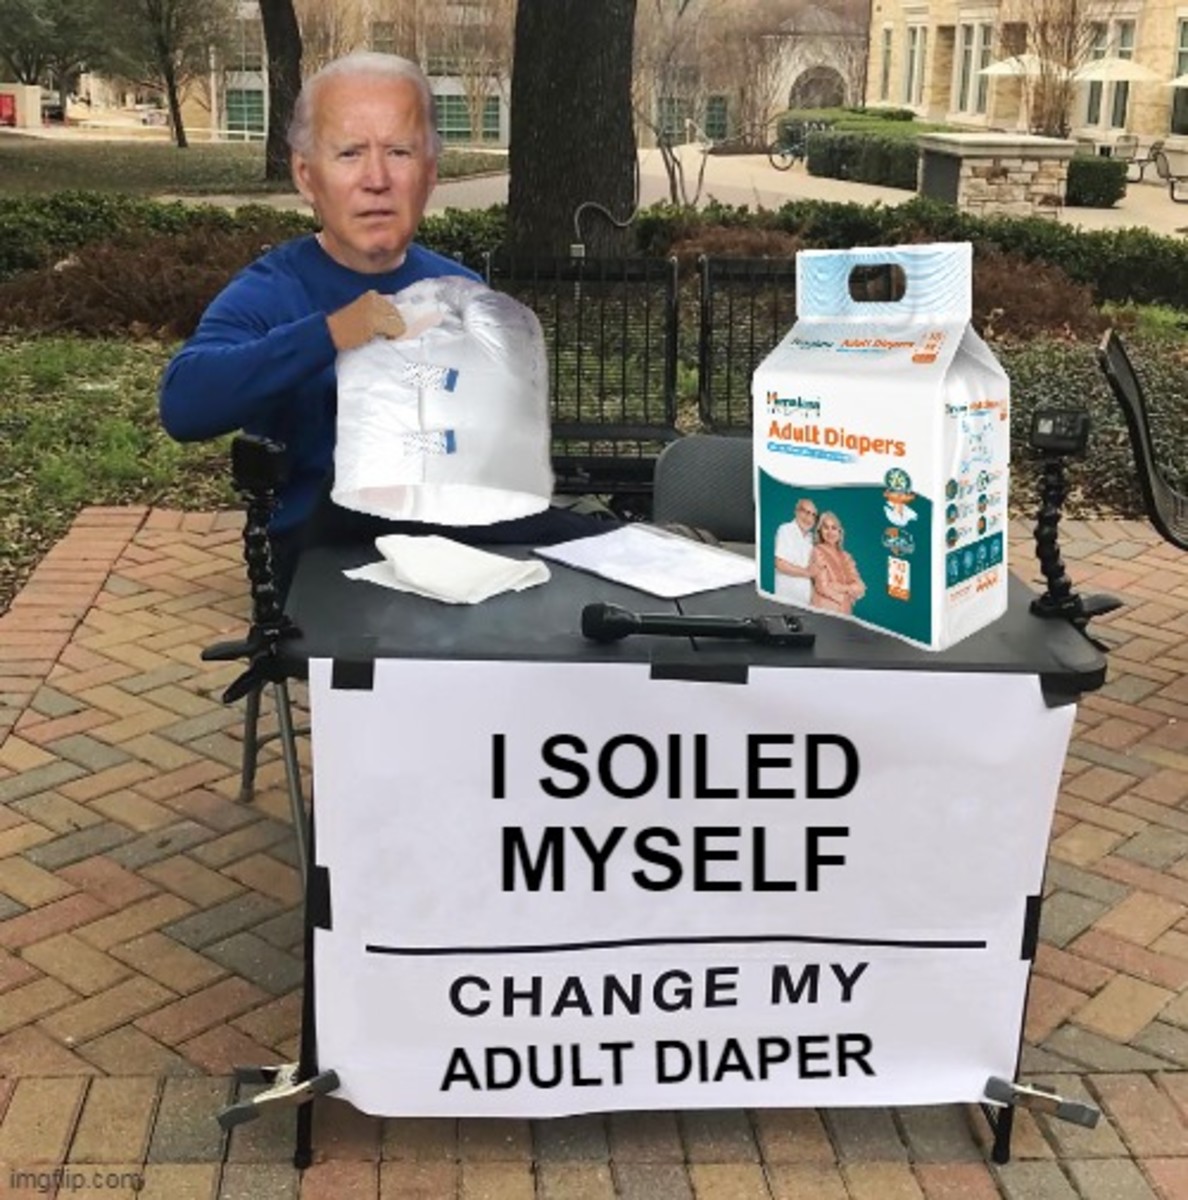 joe-biden-new-spokeman-for-adult-diapers-sales-up